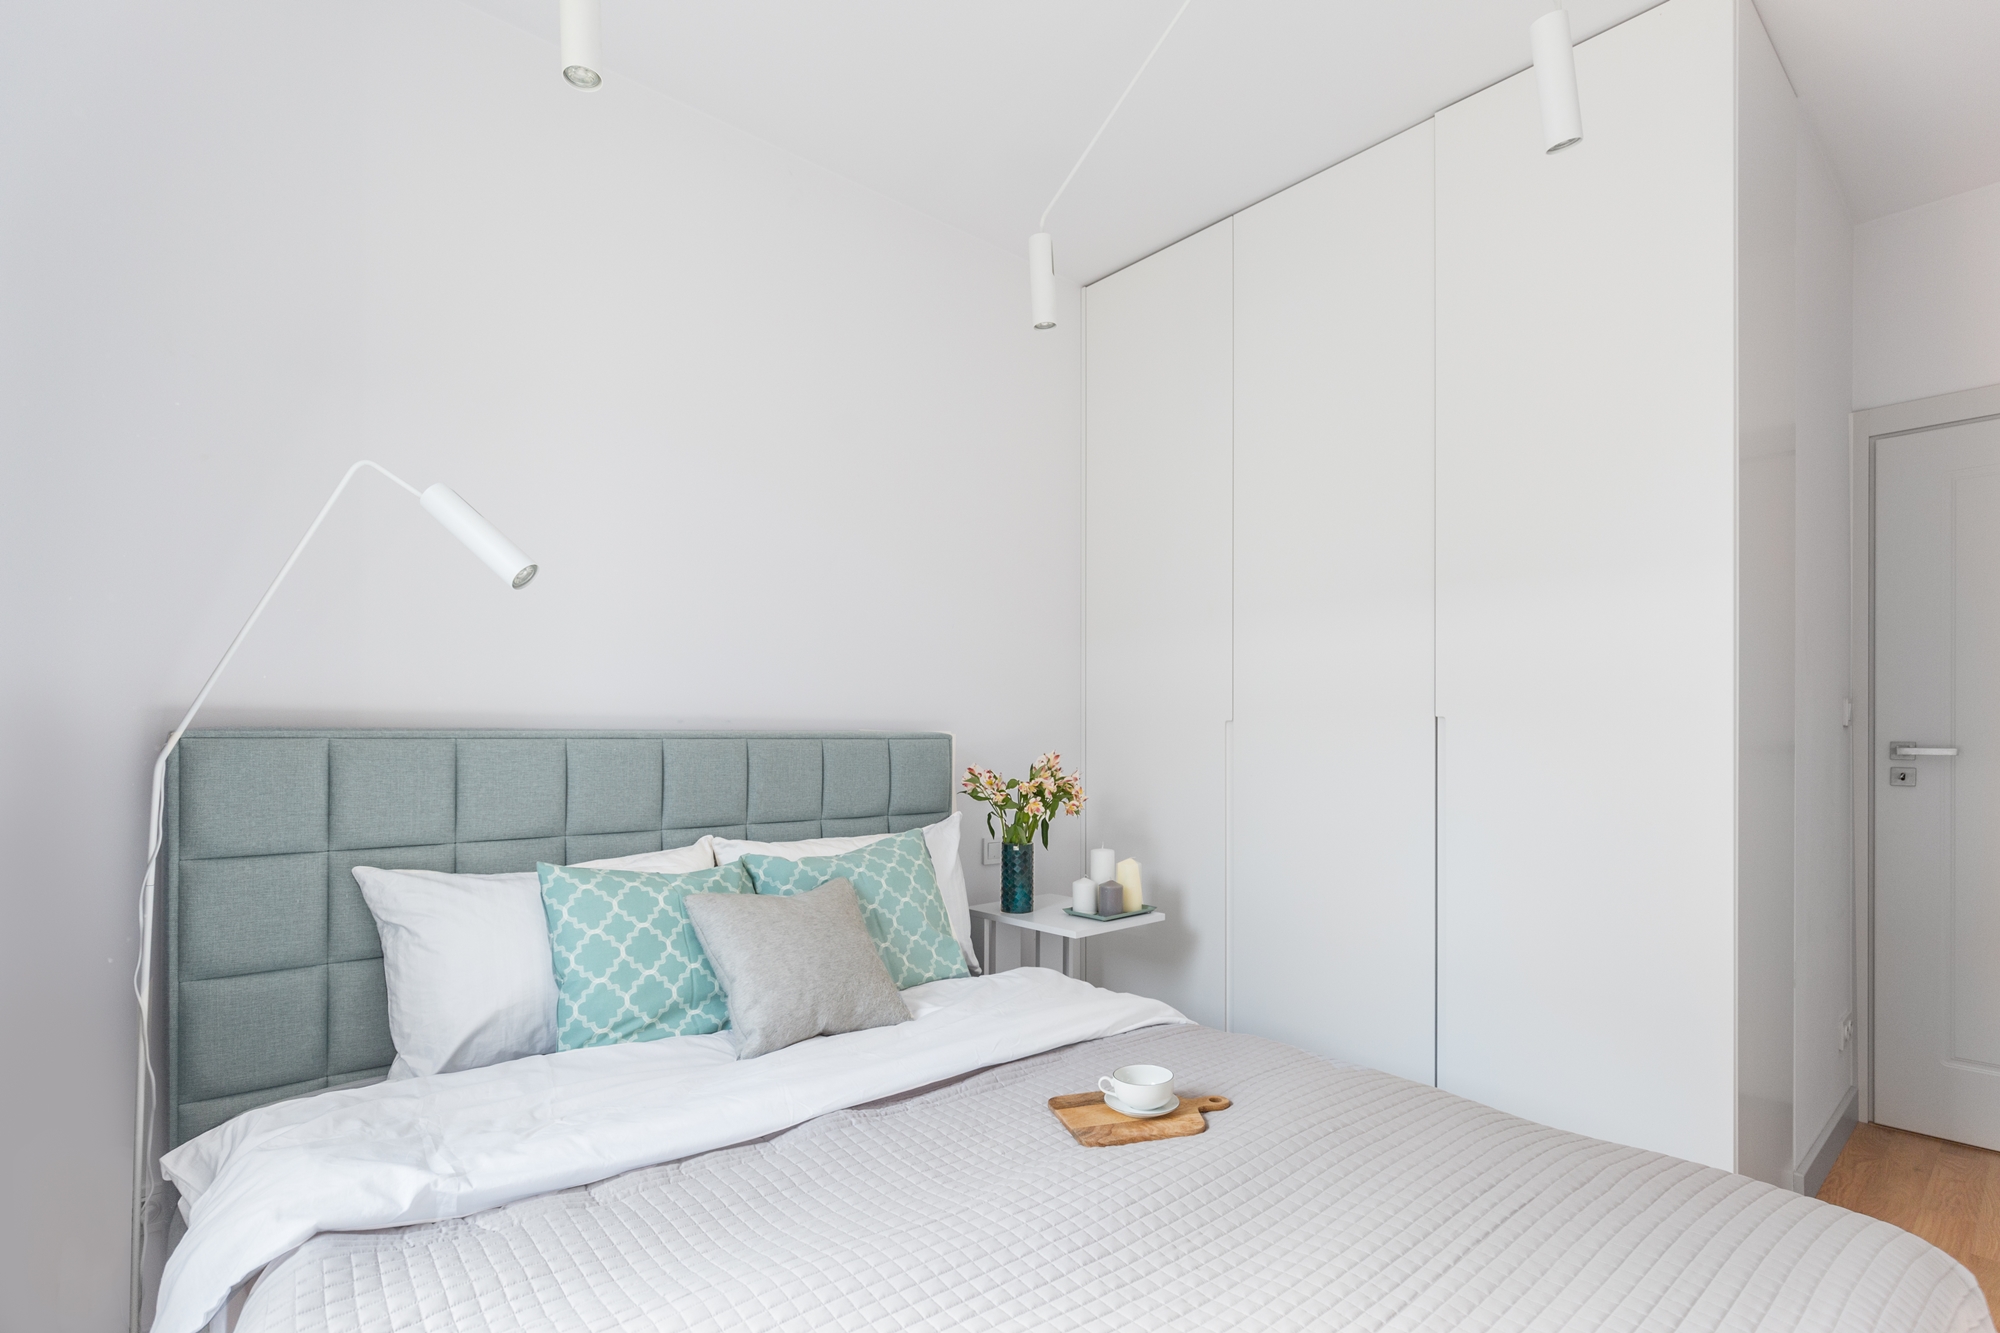 Małe przestrzenie: stylowe i kobiece mieszkanie o pow. 35 m ²